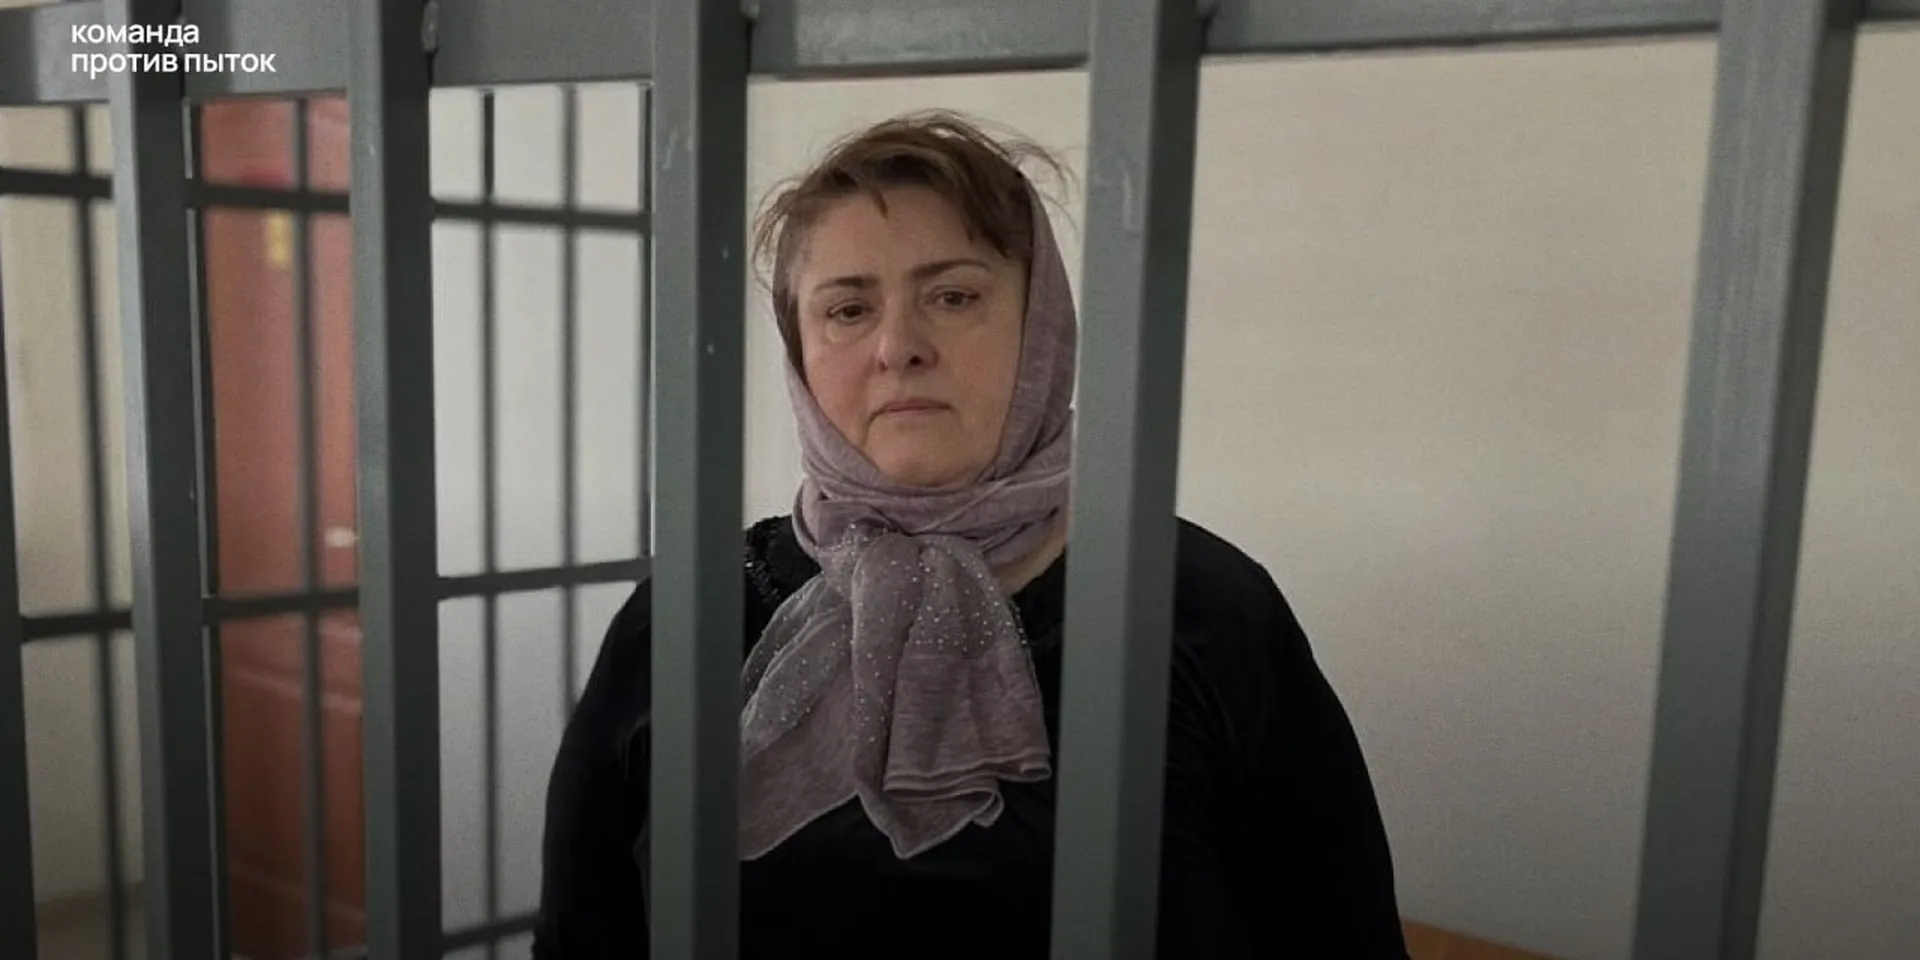 Суд смягчил приговор матери чеченских оппозиционеров Янгулбаевых Зареме Мусаевой на полгода по состоянию здоровья